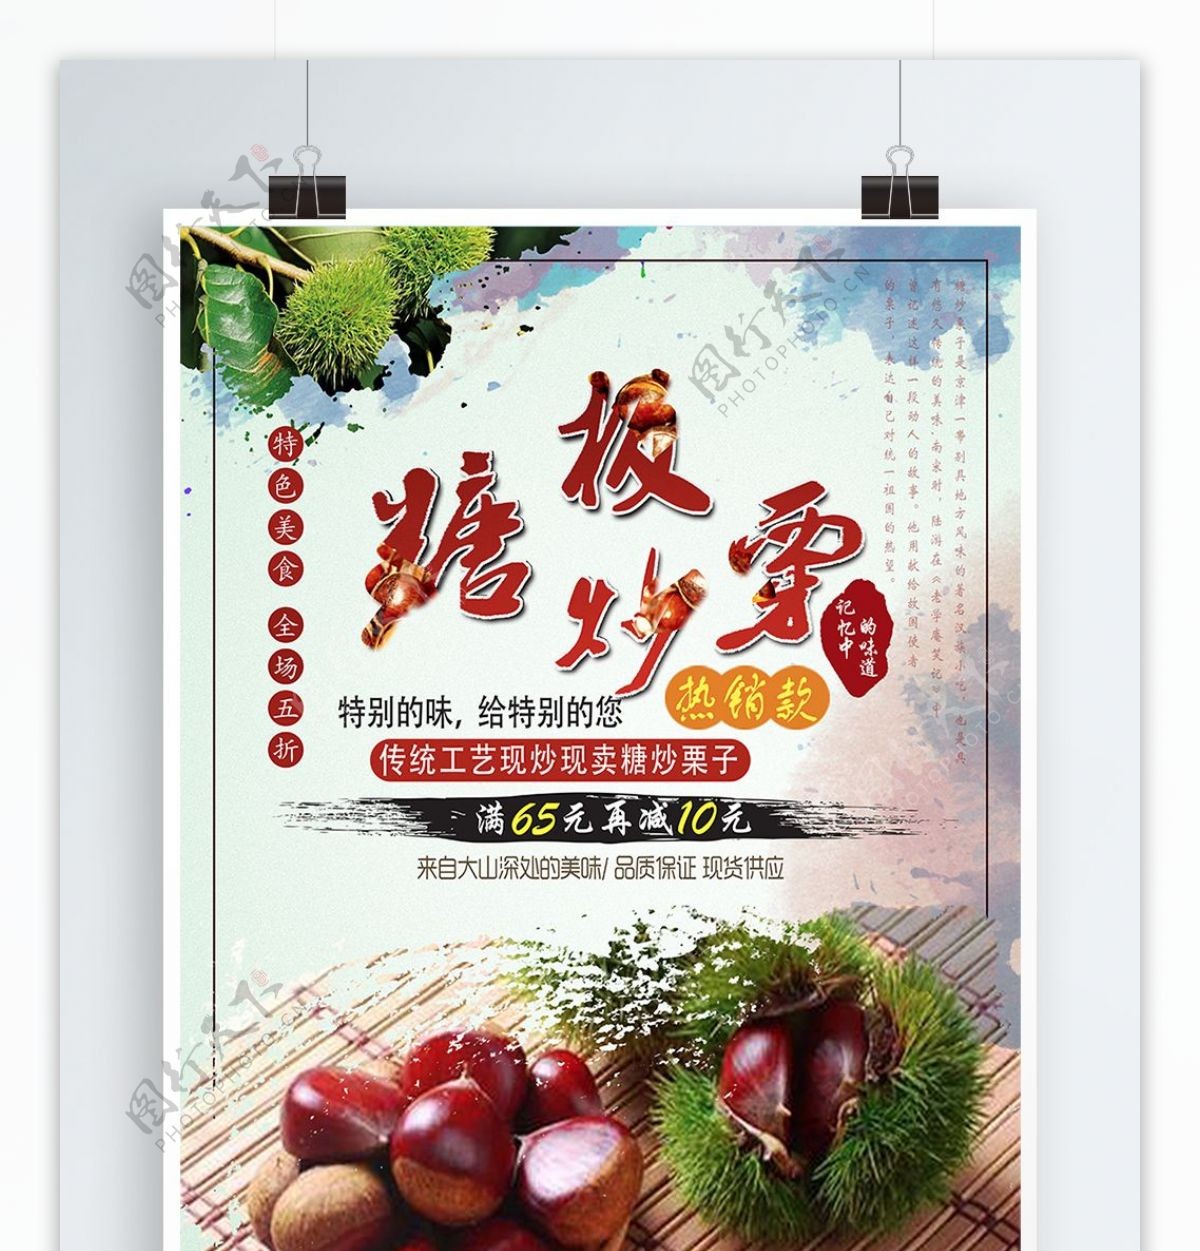 中华传统美食糖炒栗子海报设计